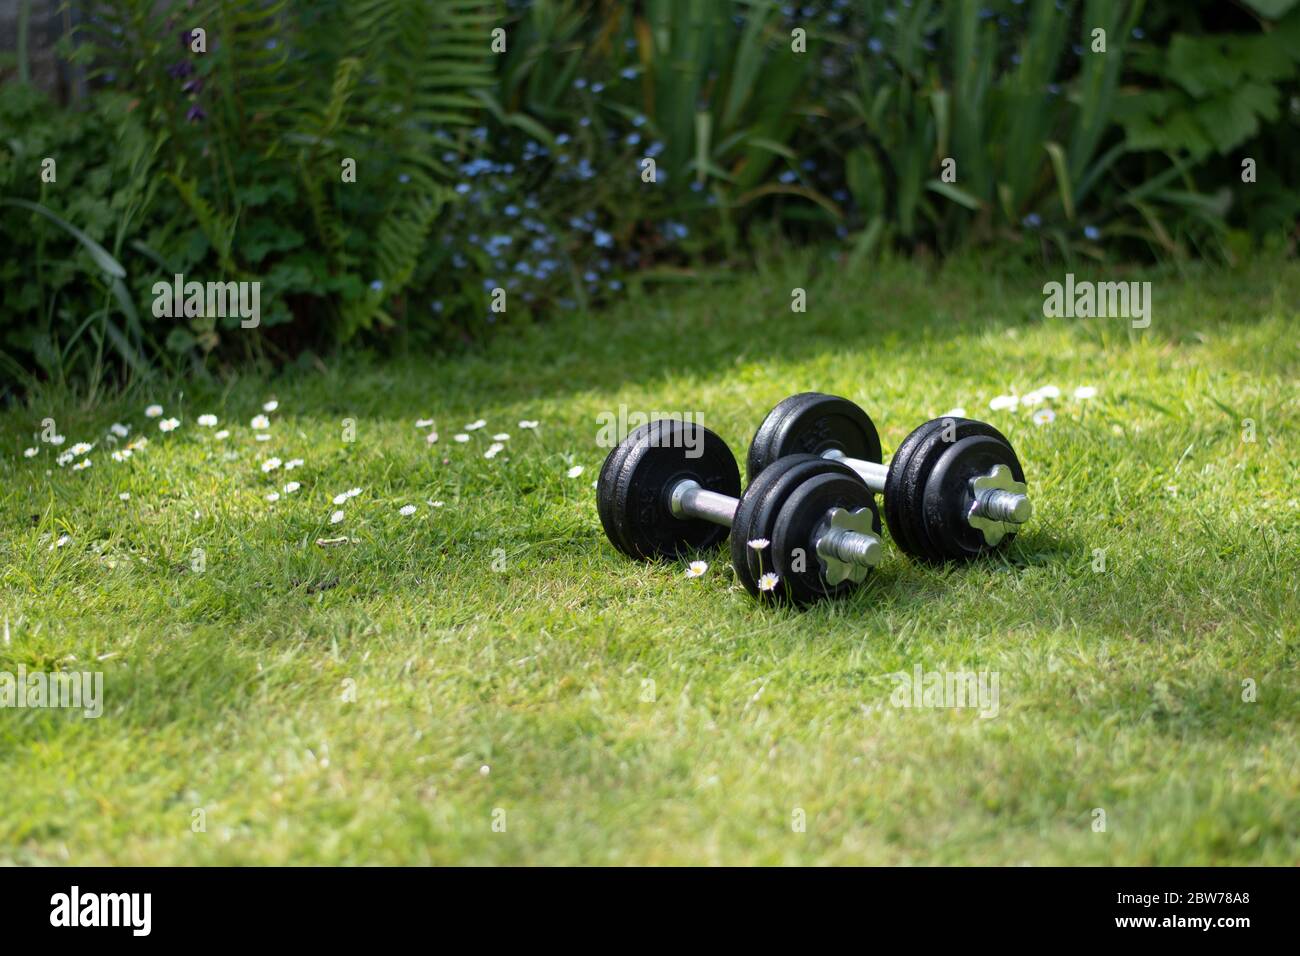 Un juego de pesas en un gimnasio natural de jardín durante el cierre. Foto de stock